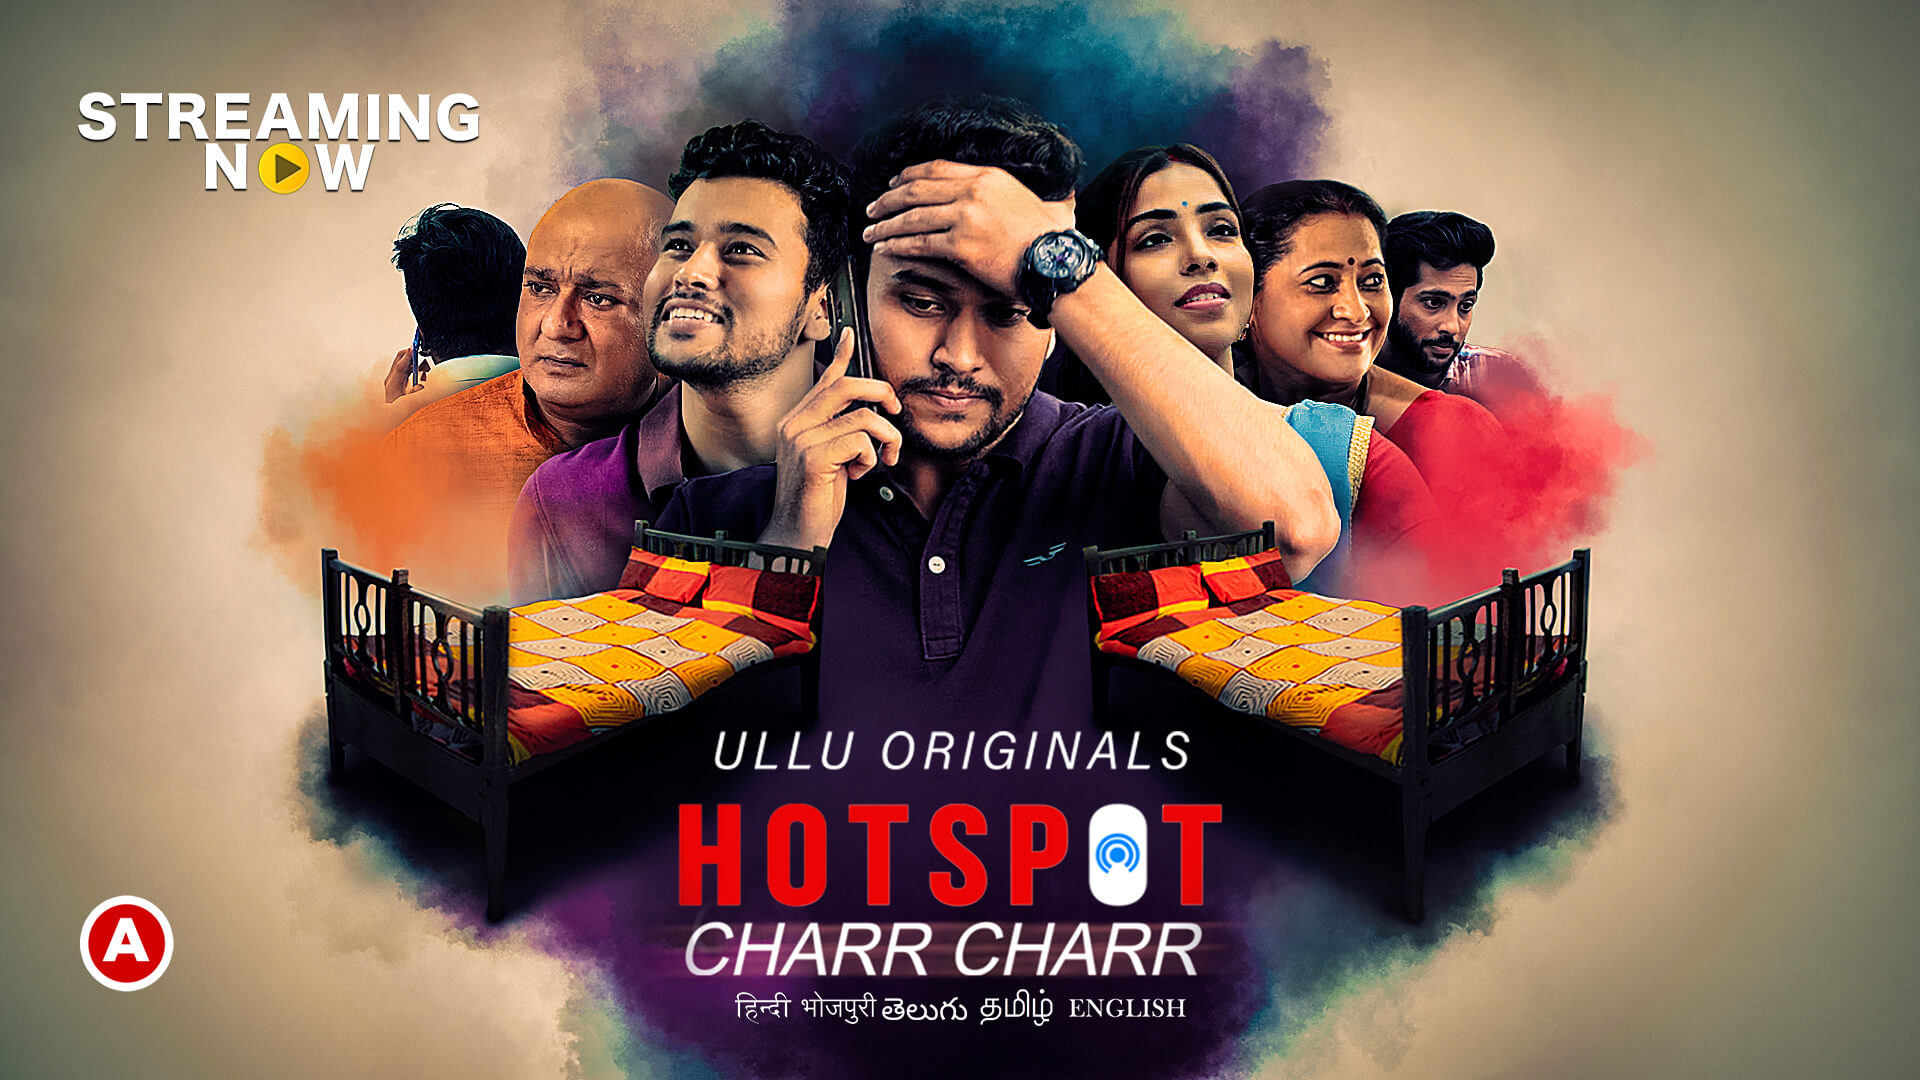 18+ Charr Charr (Hotspot) 2021 S01 Hindi Ullu Originals Complete Web Series 720p HDRip 300MB Download